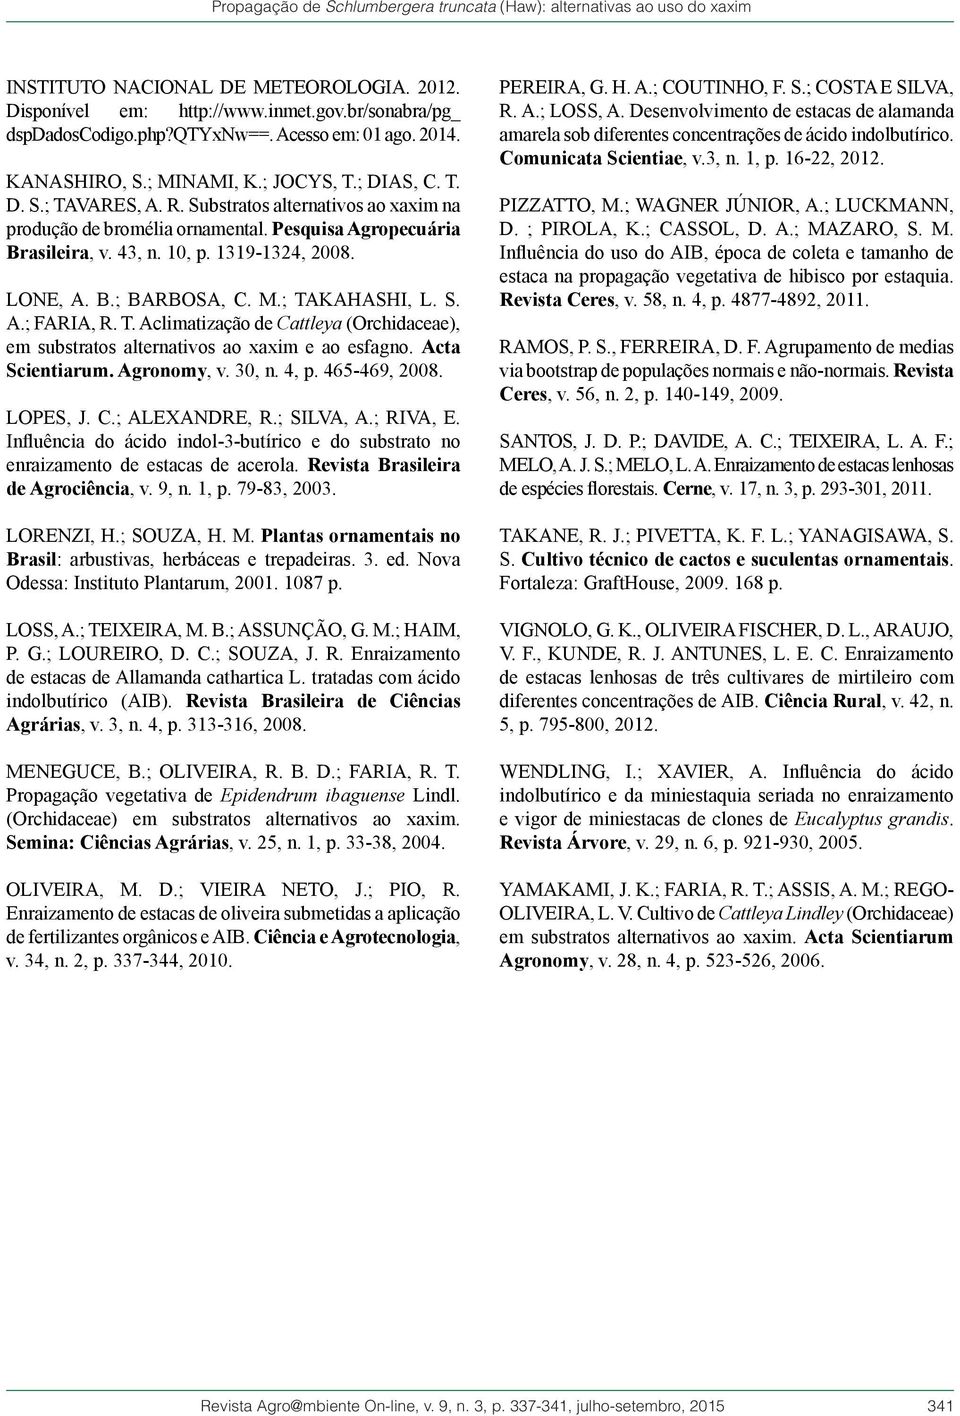 Pesquisa Agropecuária Brasileira, v. 43, n. 10, p. 1319-1324, 2008. LONE, A. B.; BARBOSA, C. M.; TAKAHASHI, L. S. A.; FARIA, R. T. Aclimatização de Cattleya (Orchidaceae), em substratos alternativos ao xaxim e ao esfagno.